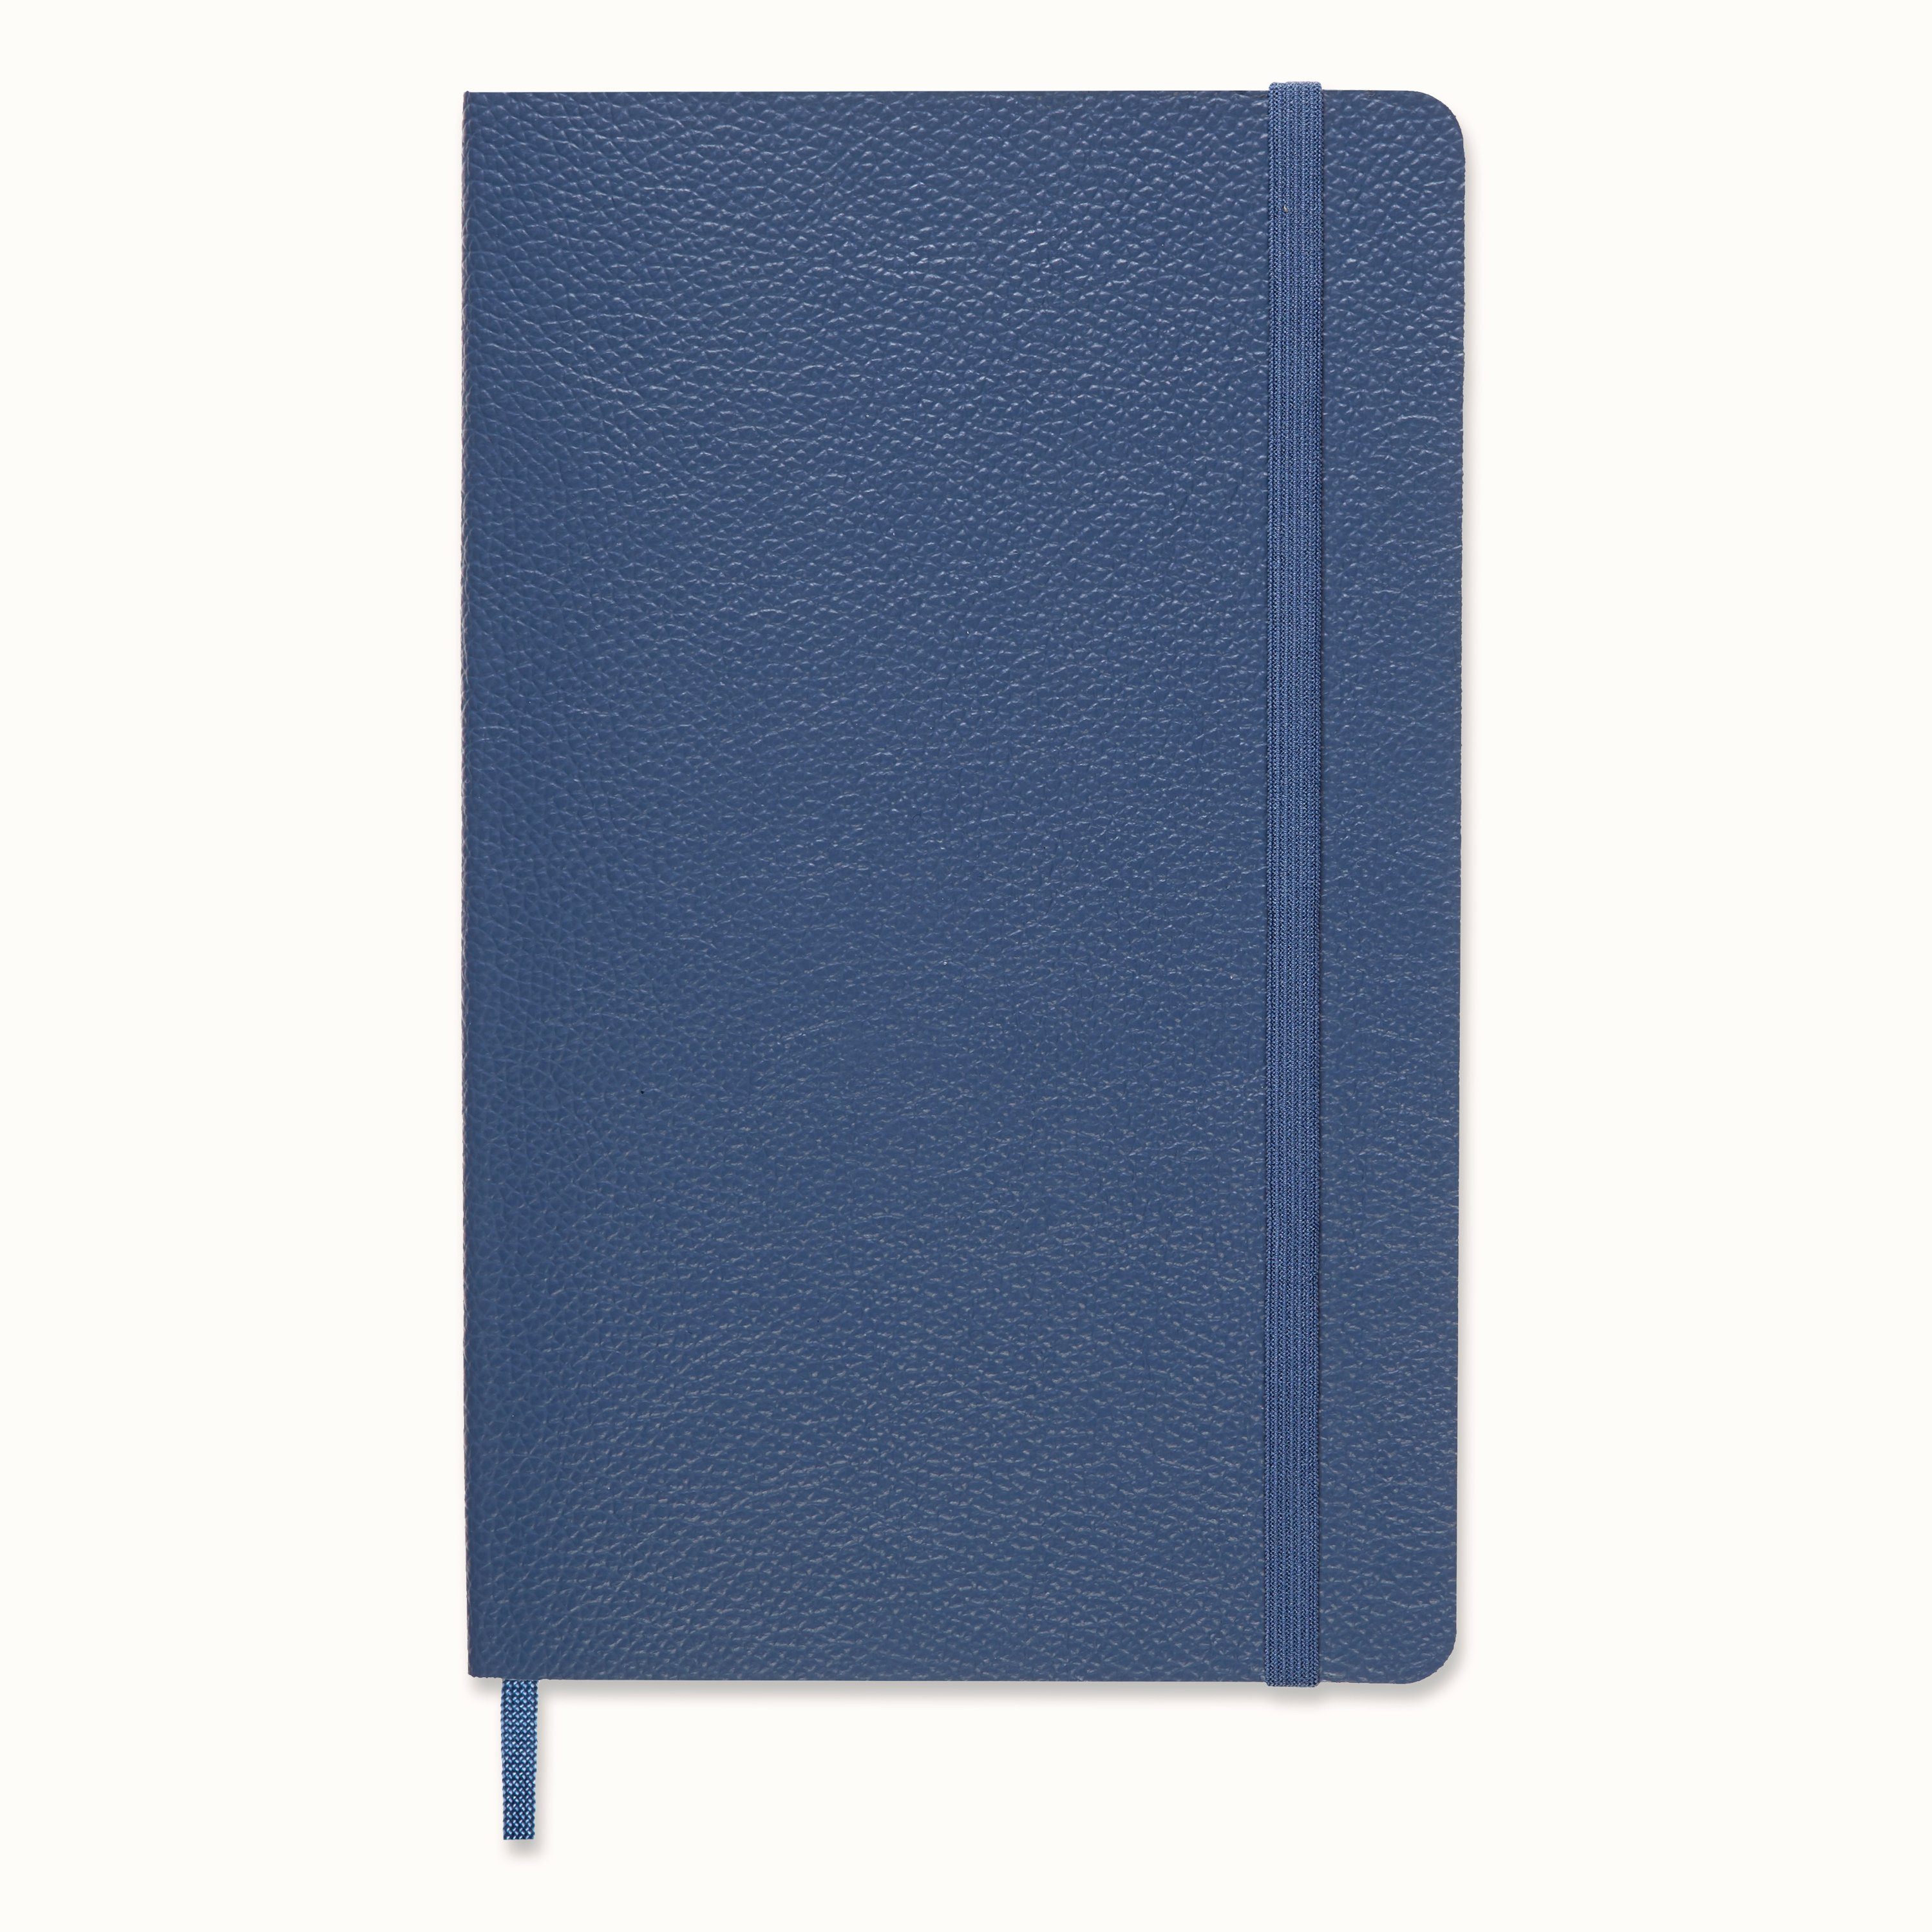 MOLESKINE Notizbuch, Weicher Ledereinband - Groß (13x21) - Liniert - Vergissmeinnicht Blau